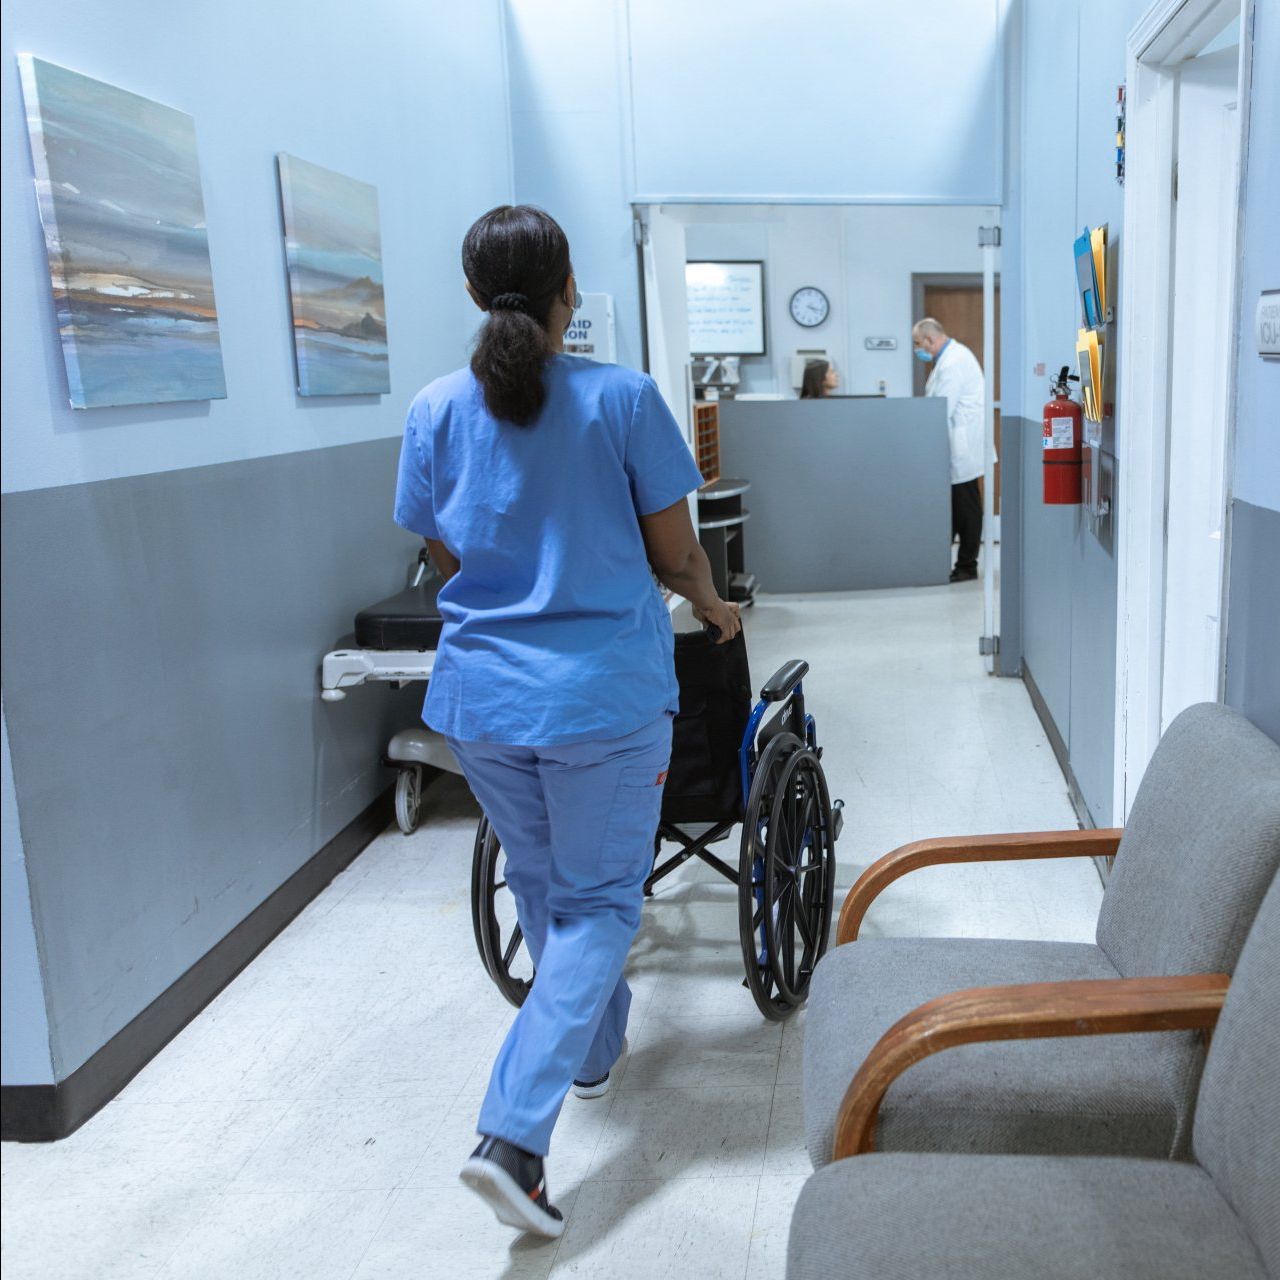 A Nurse pushing a wheel chair